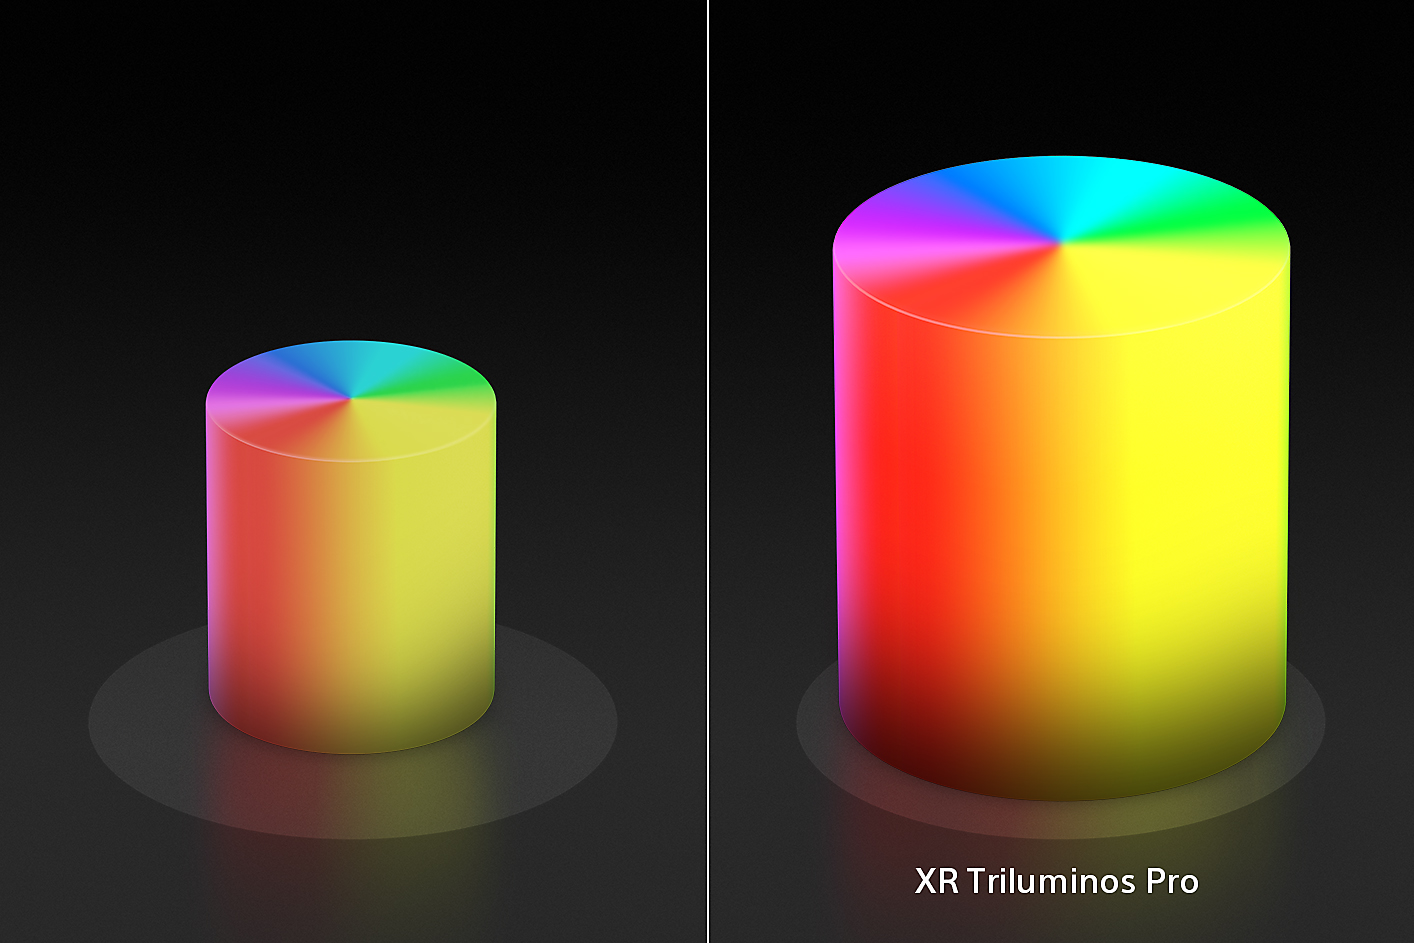 Immagine divisa che mostra due coni di colore a forma di candela, uno più piccolo a sinistra e uno più grande a destra con colori e texture ottimizzati grazie a XR Triluminos Pro